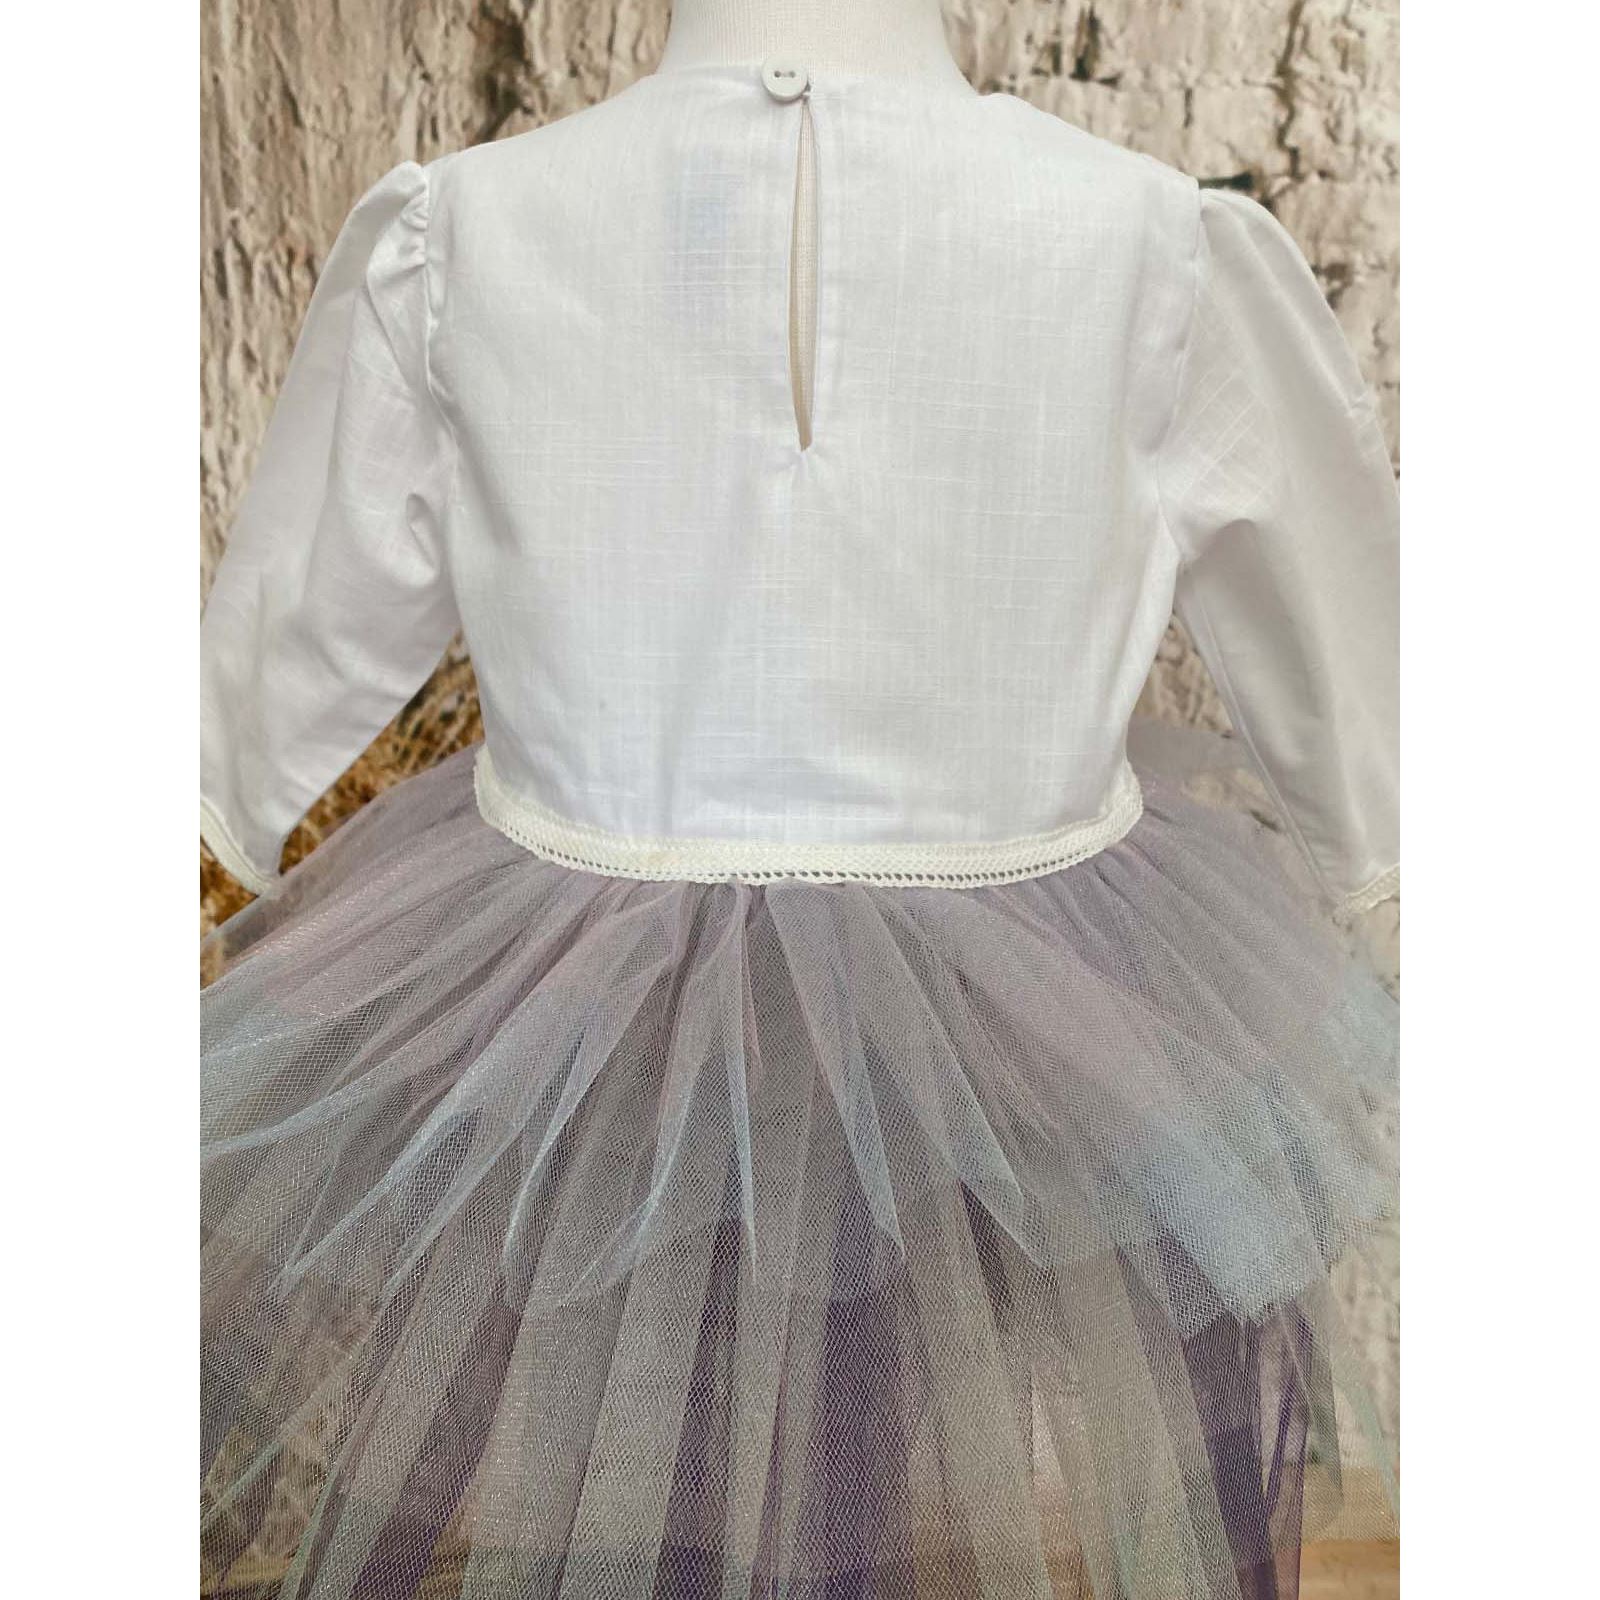 Shecco Babba Kız Çocuk Karpuz Kollu Tütü Elbise Bandana Takım 6-10 Yaş Beyaz-Mor